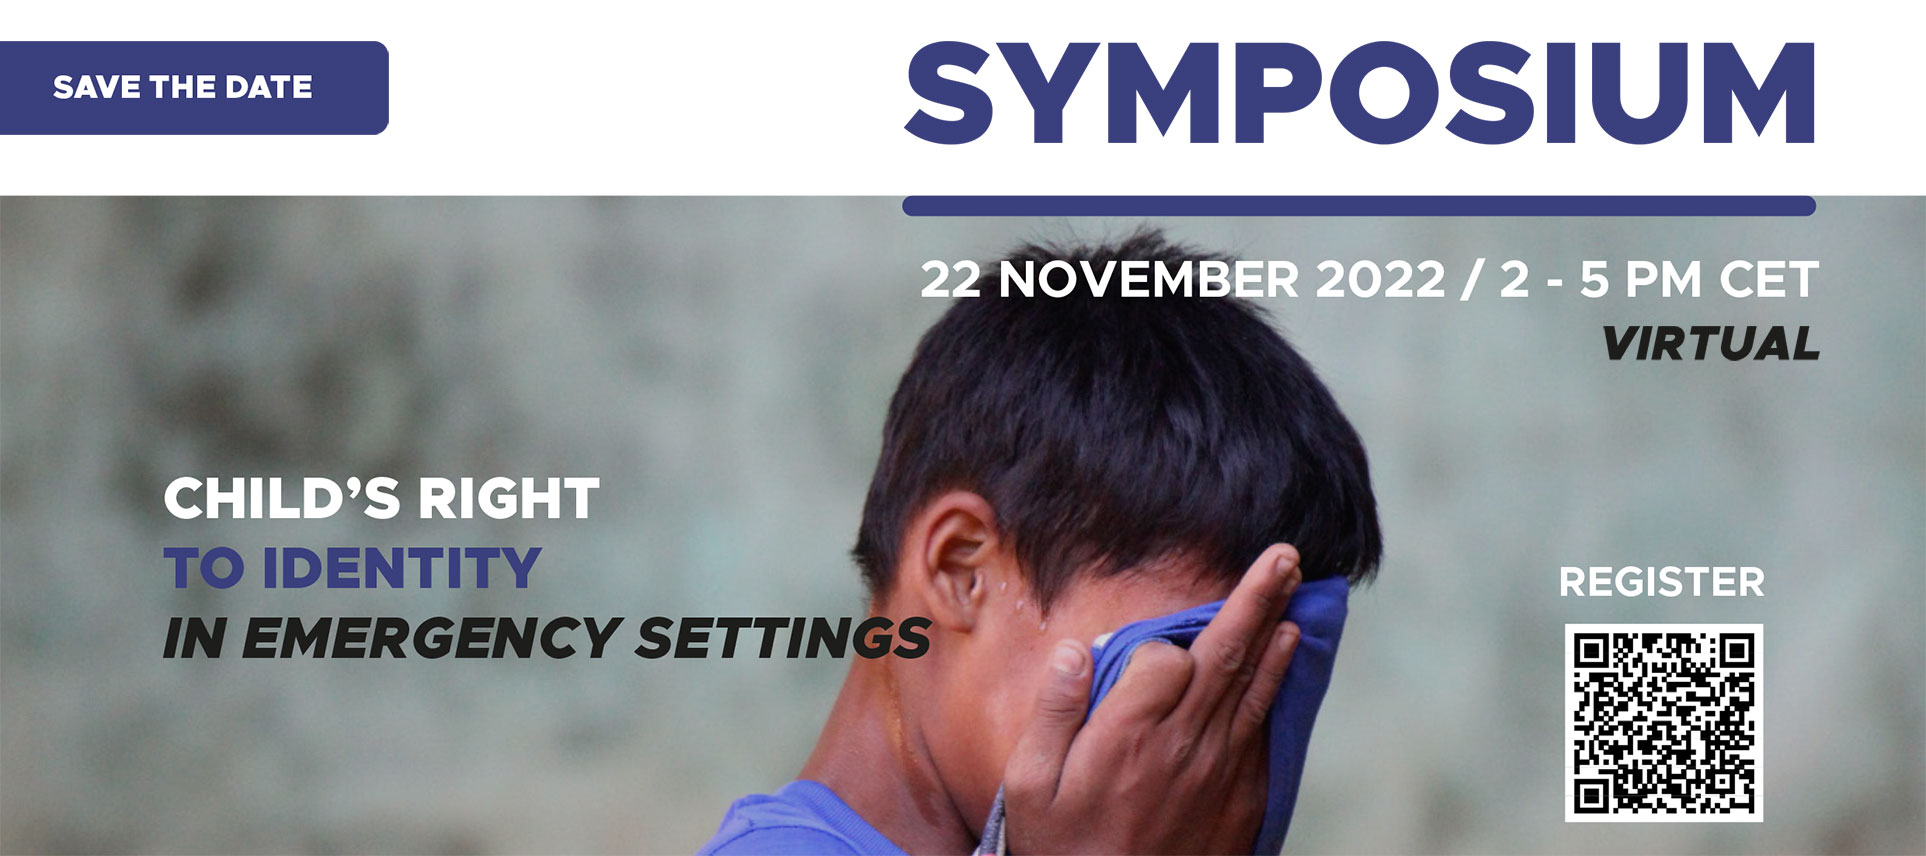 22 novembre 2022 : Symposium virtuel - Le droit de l'enfant à l'identité dans les situations d'urgence